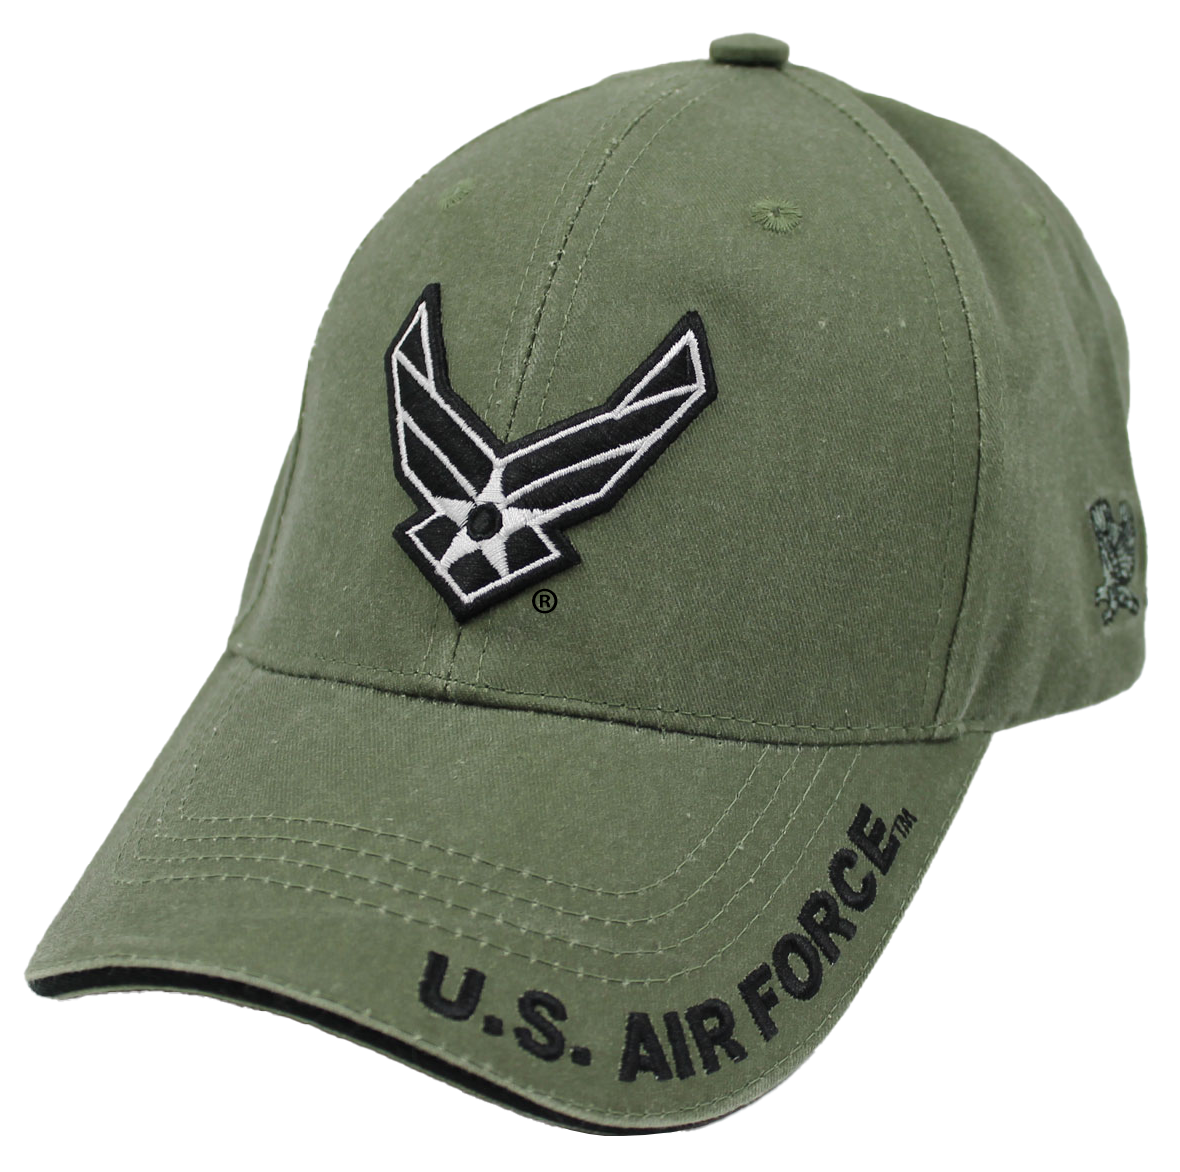 CAP-U.S.AIR FORCE LOGO (ODGRN)